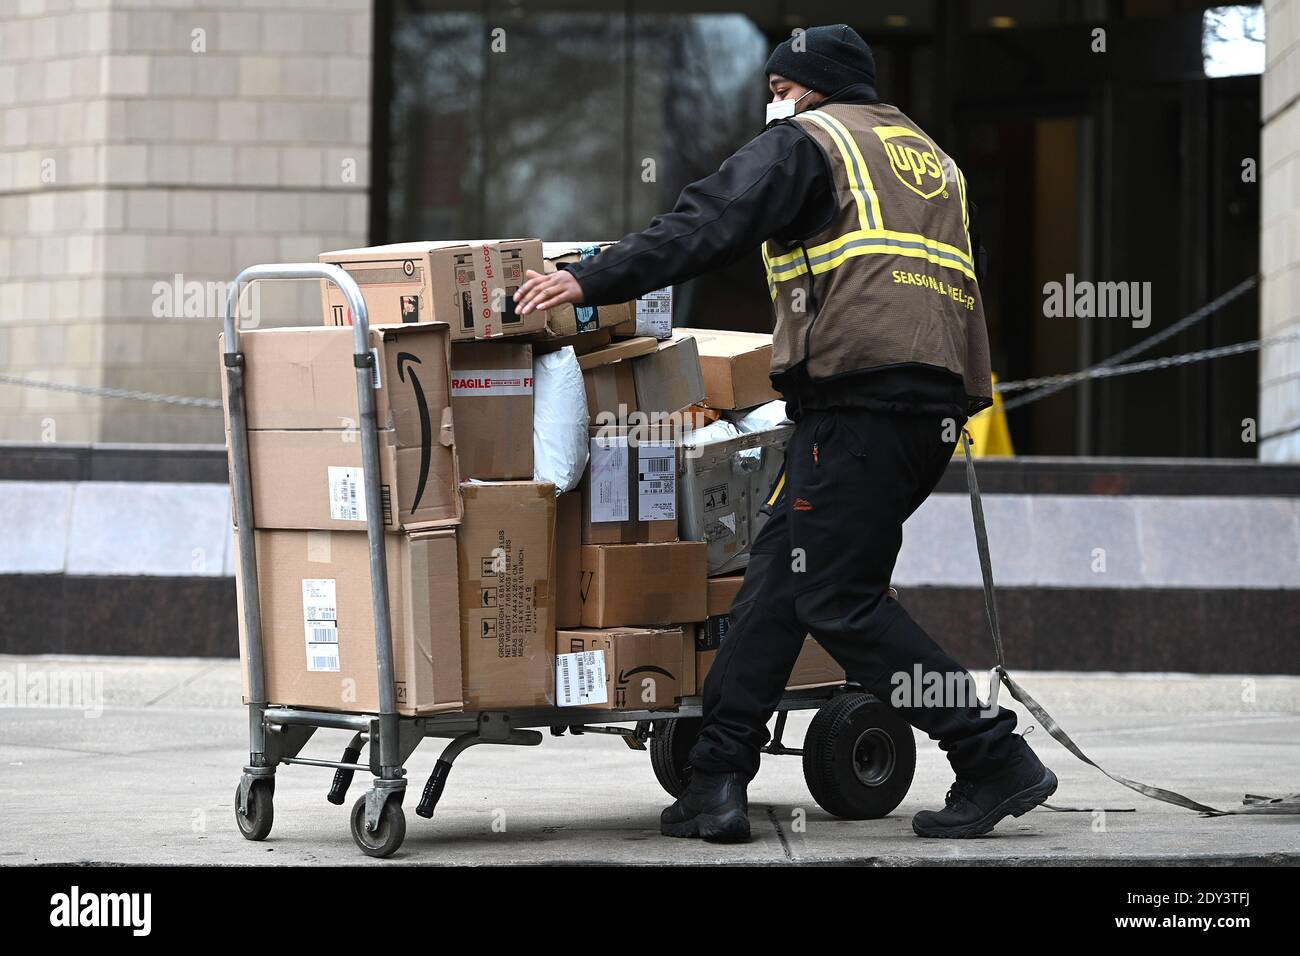 New York, USA. Dezember 2020. Ein UPS-Mitarbeiter bewegt einen Handwagen,  der mit Paketen gestapelt ist, die am 24. Dezember 2020 in New York, NY,  geliefert werden sollen. Mit einem Wiederaufleben von COVID-19-Infektionen